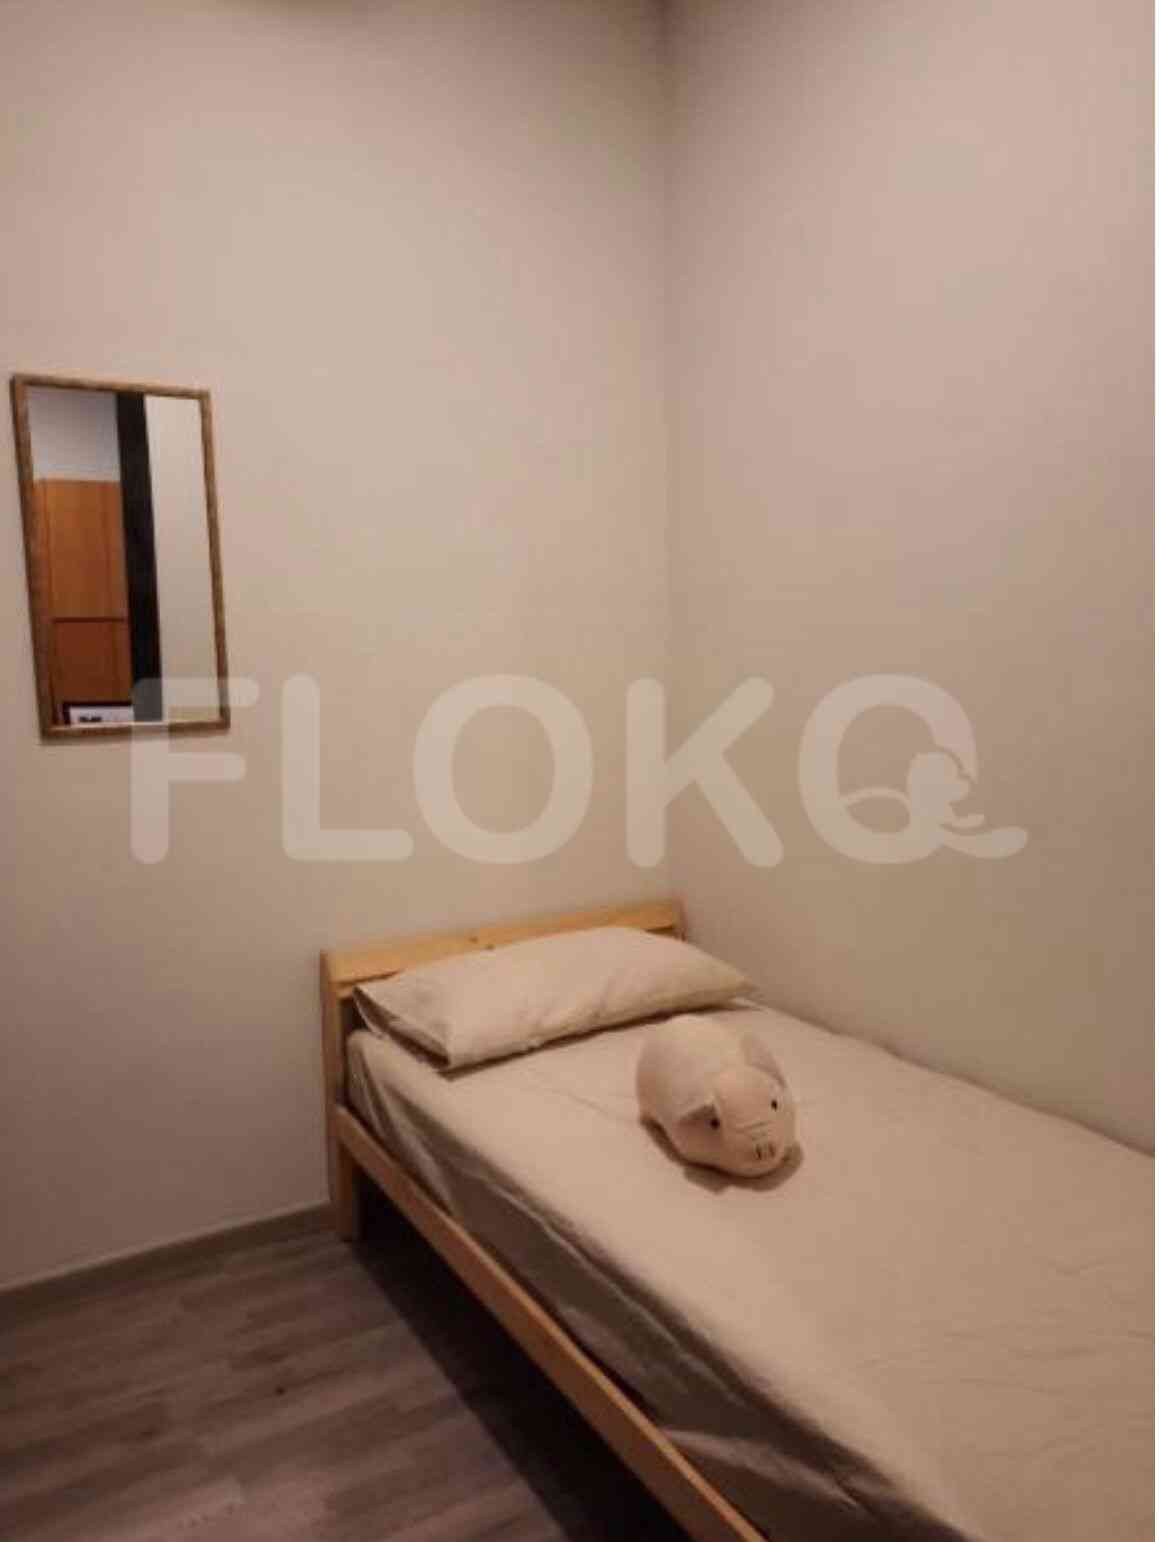 3 Bedroom on 15th Floor for Rent in Sudirman Suites Jakarta - fsu6d4 4